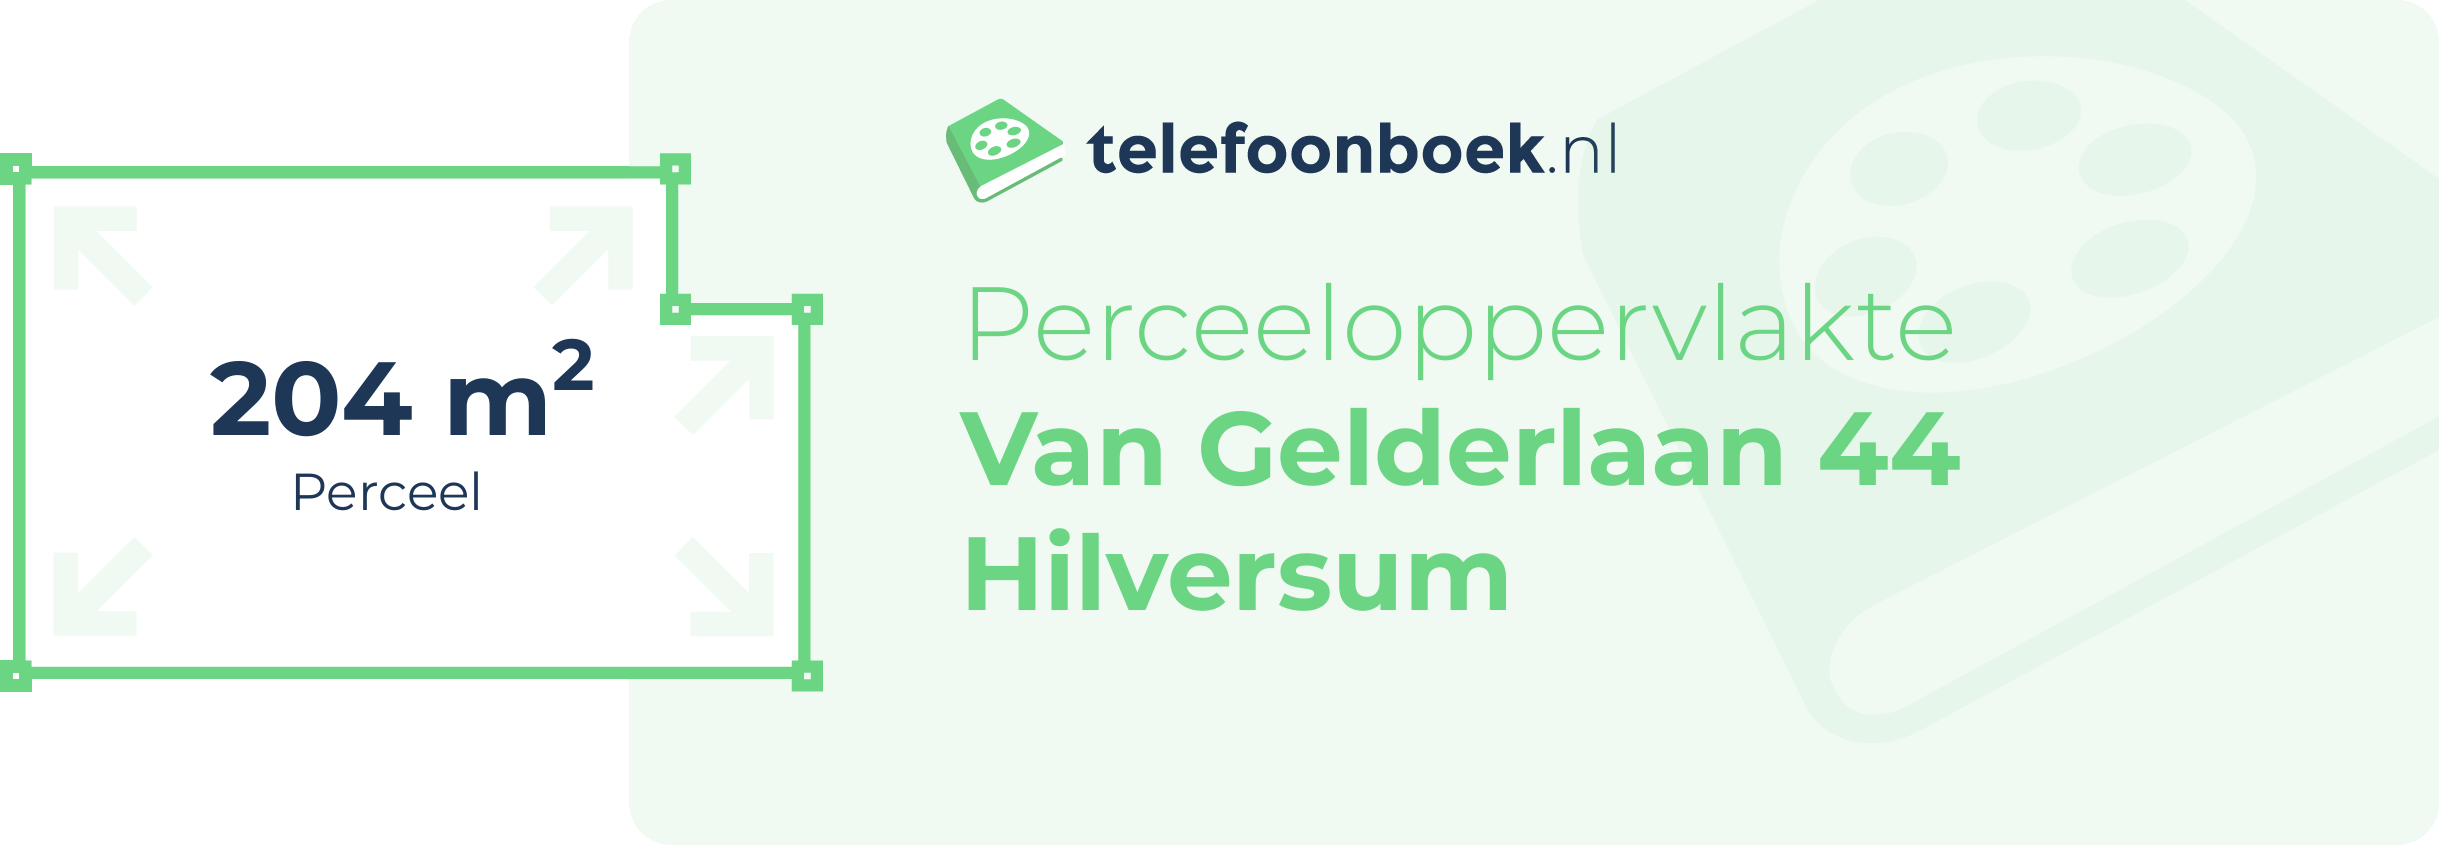 Perceeloppervlakte Van Gelderlaan 44 Hilversum